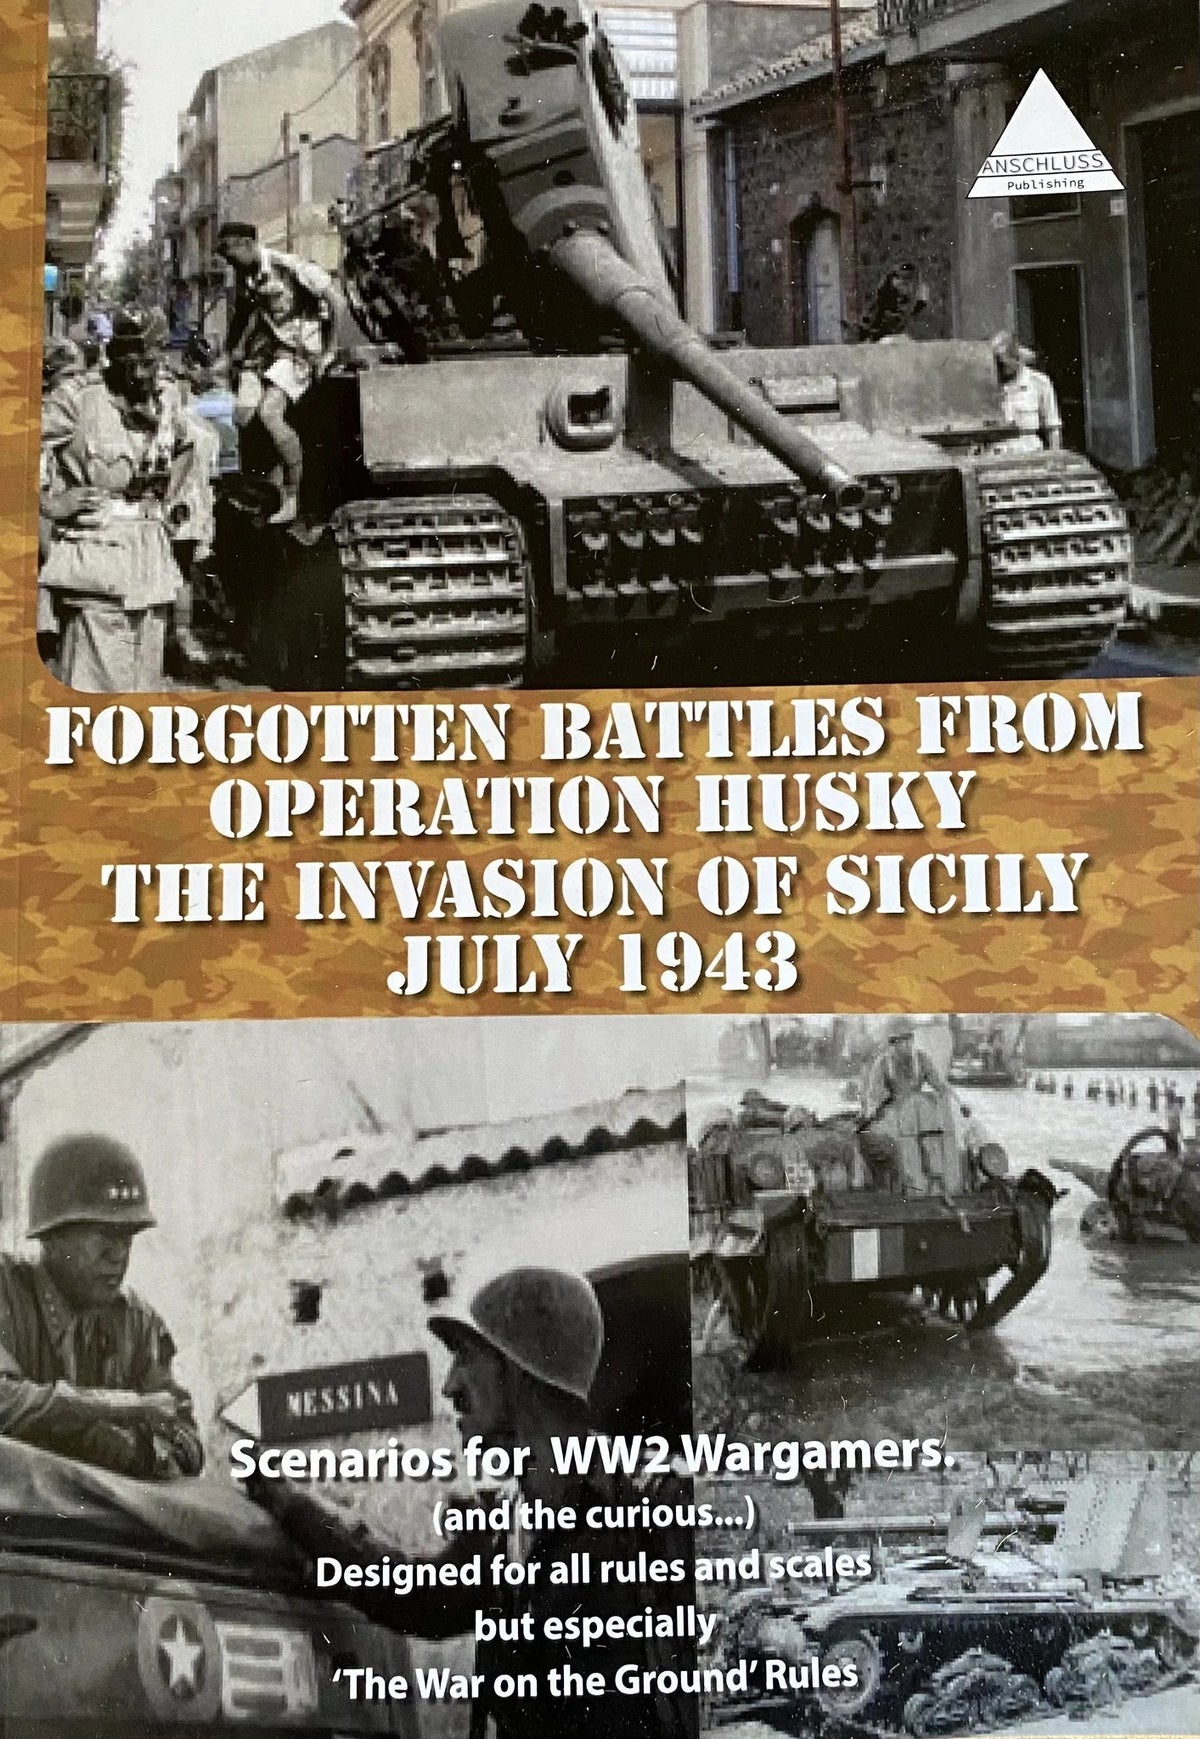 Batallas olvidadas de Europa Central - Sicilia